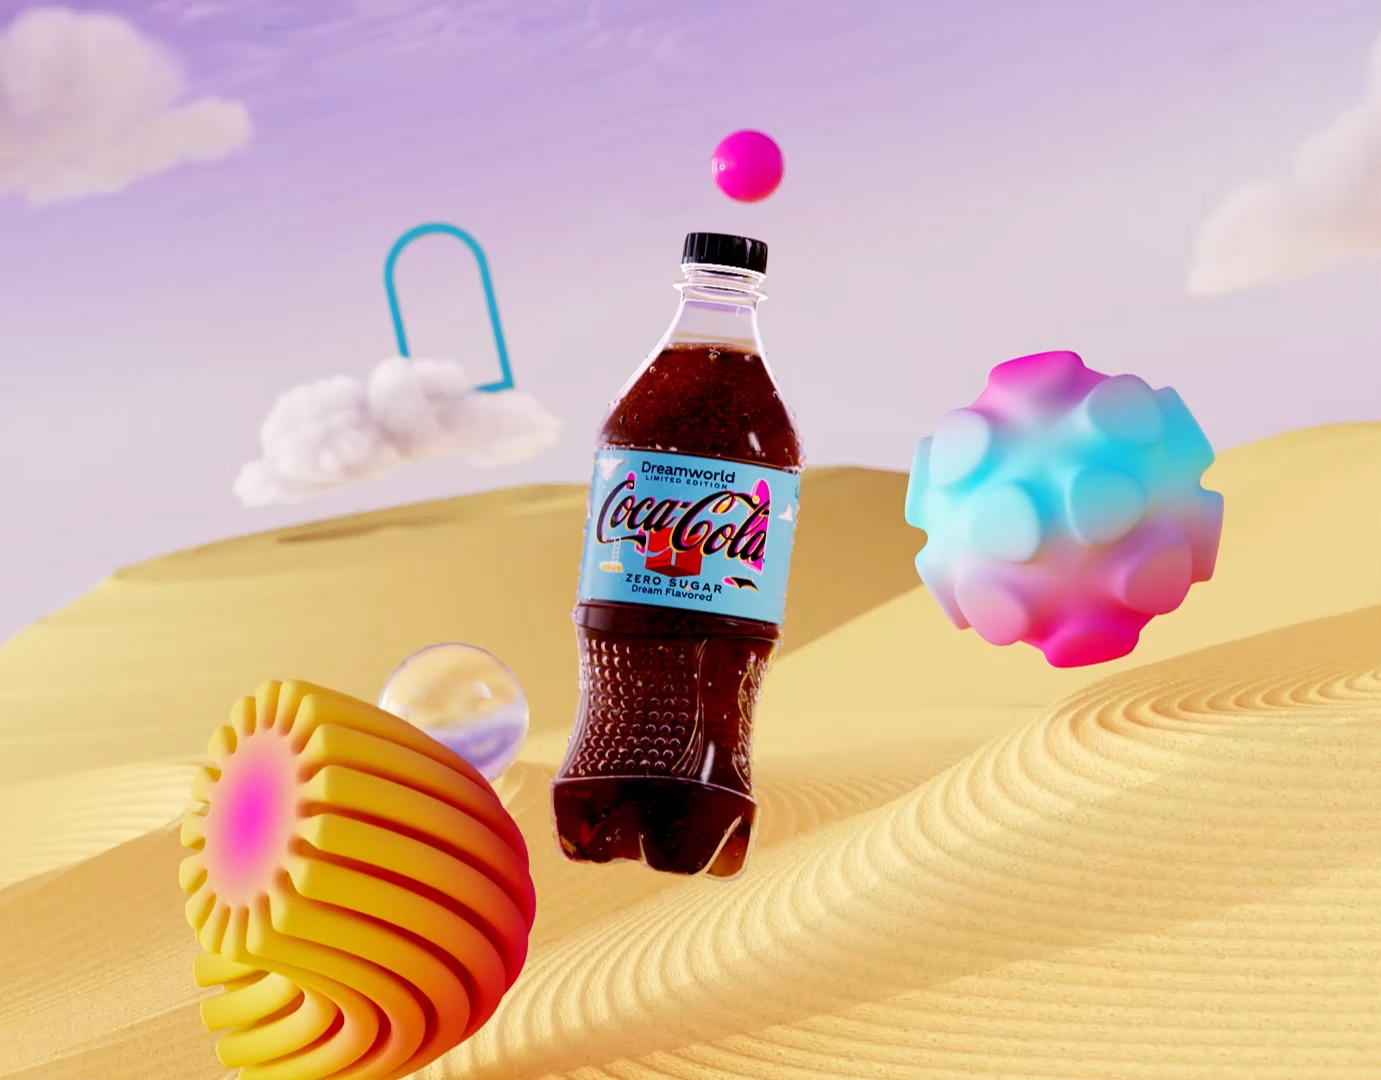 Coca-Cola Dreamworld AR